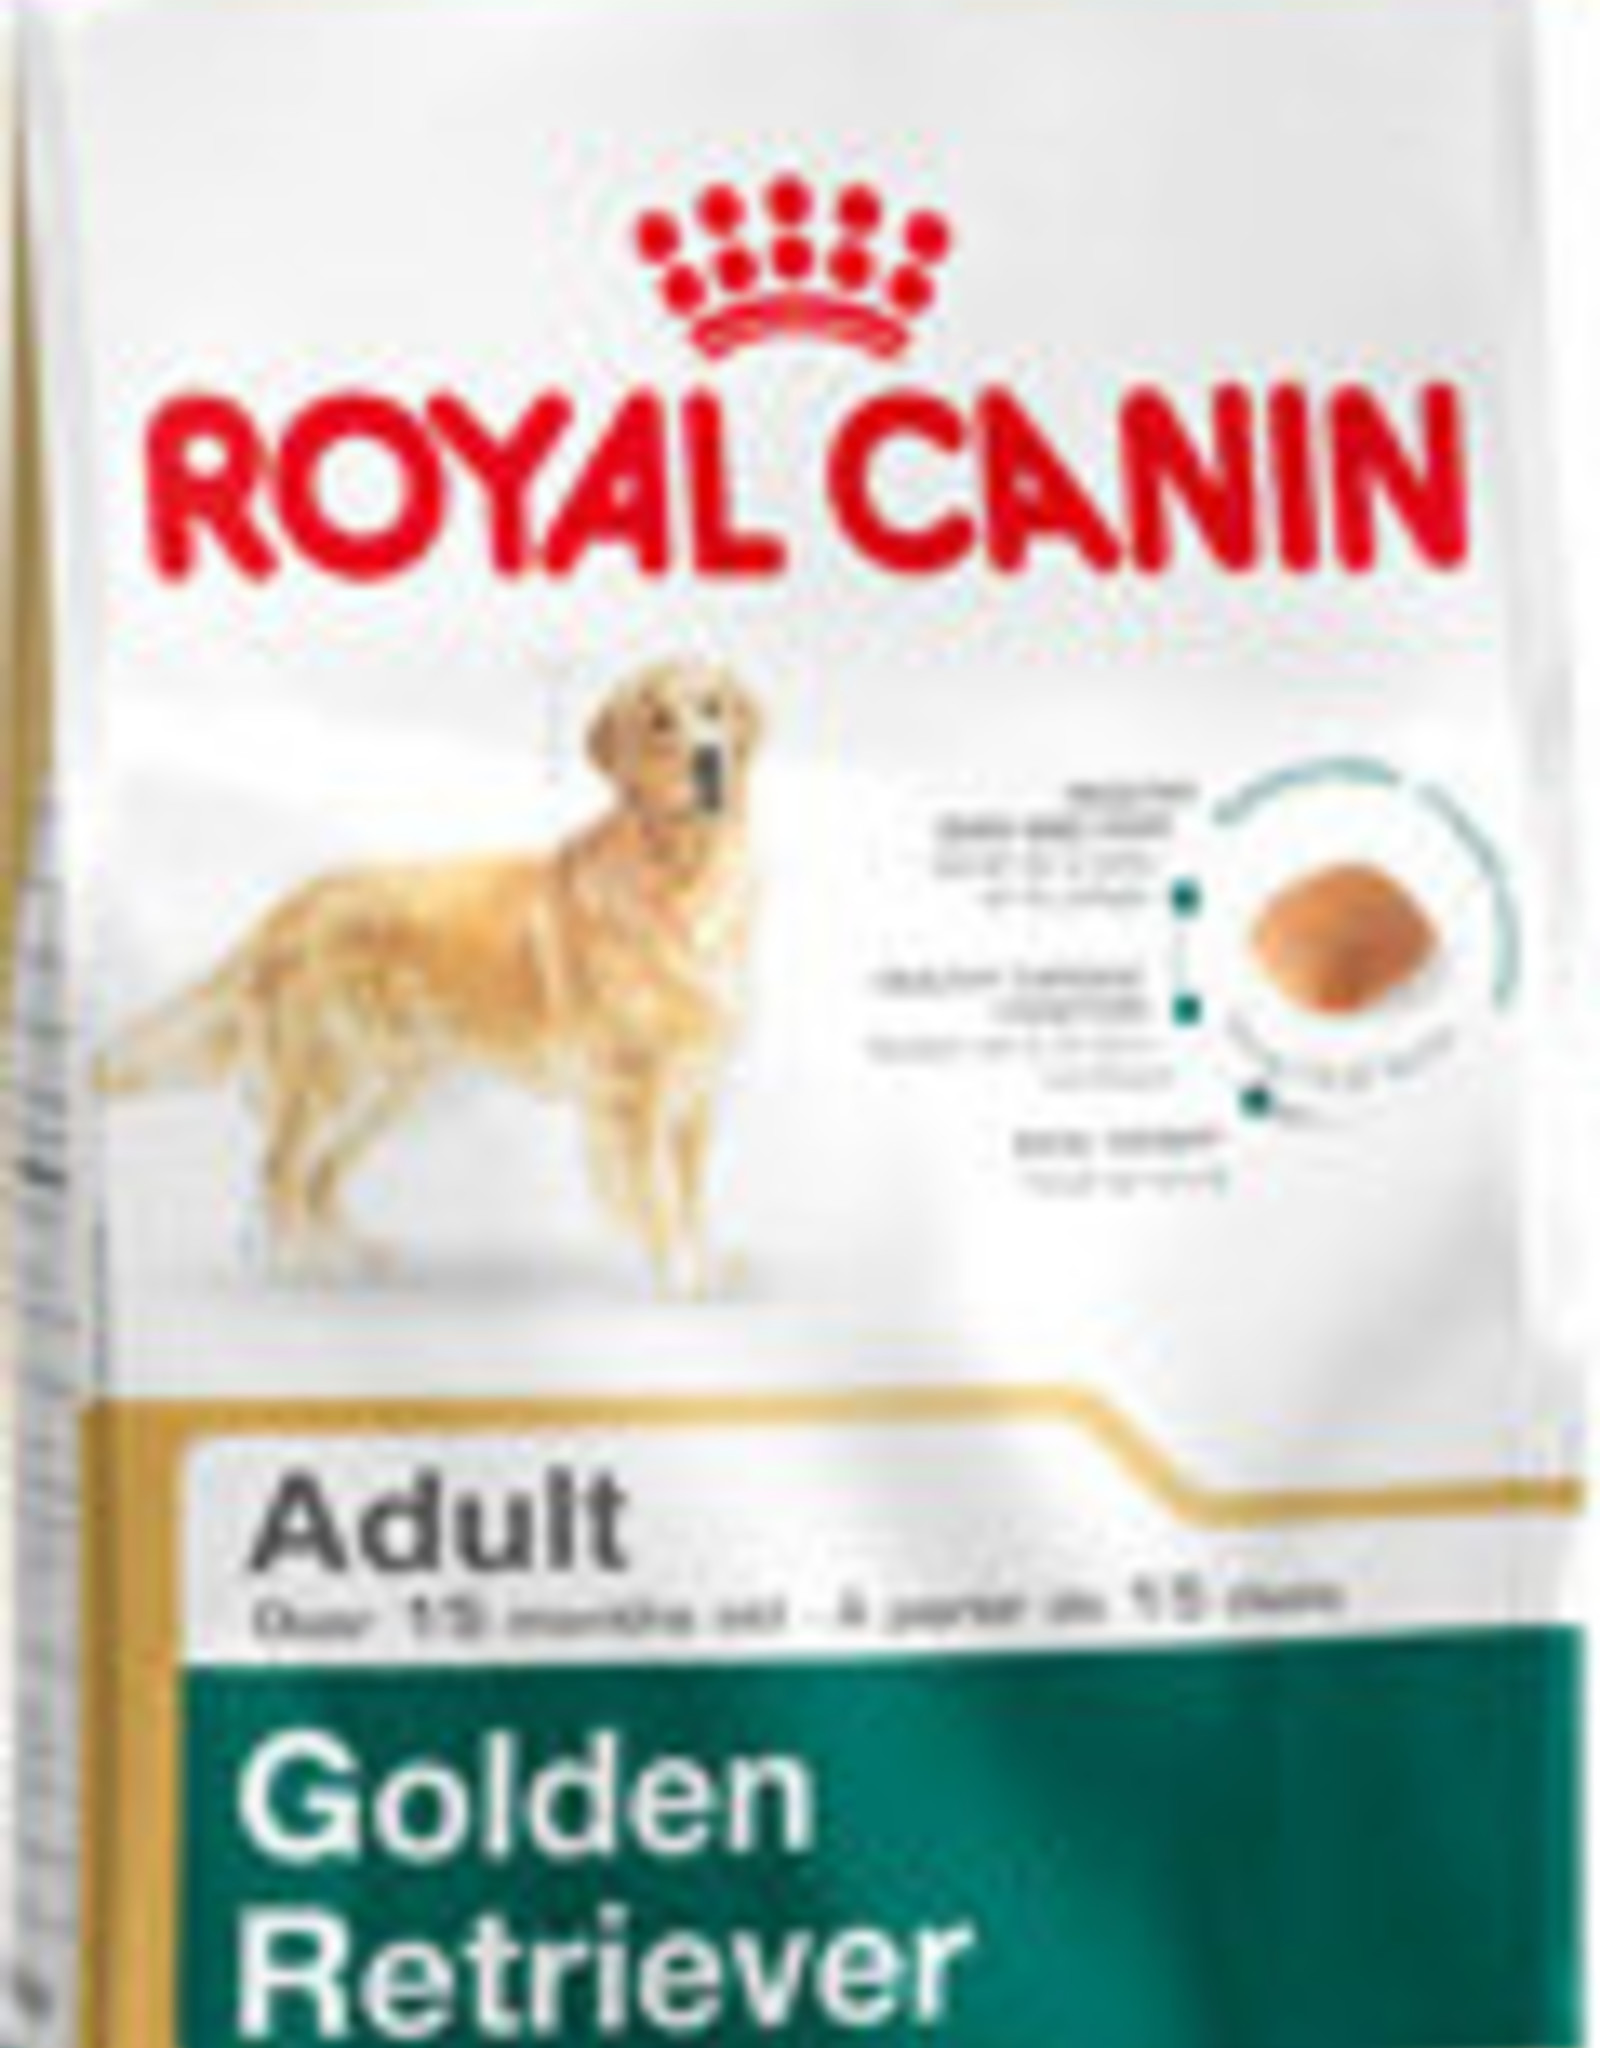 Royal Canin Royal Canin Bhn Golden Retriever 12kg